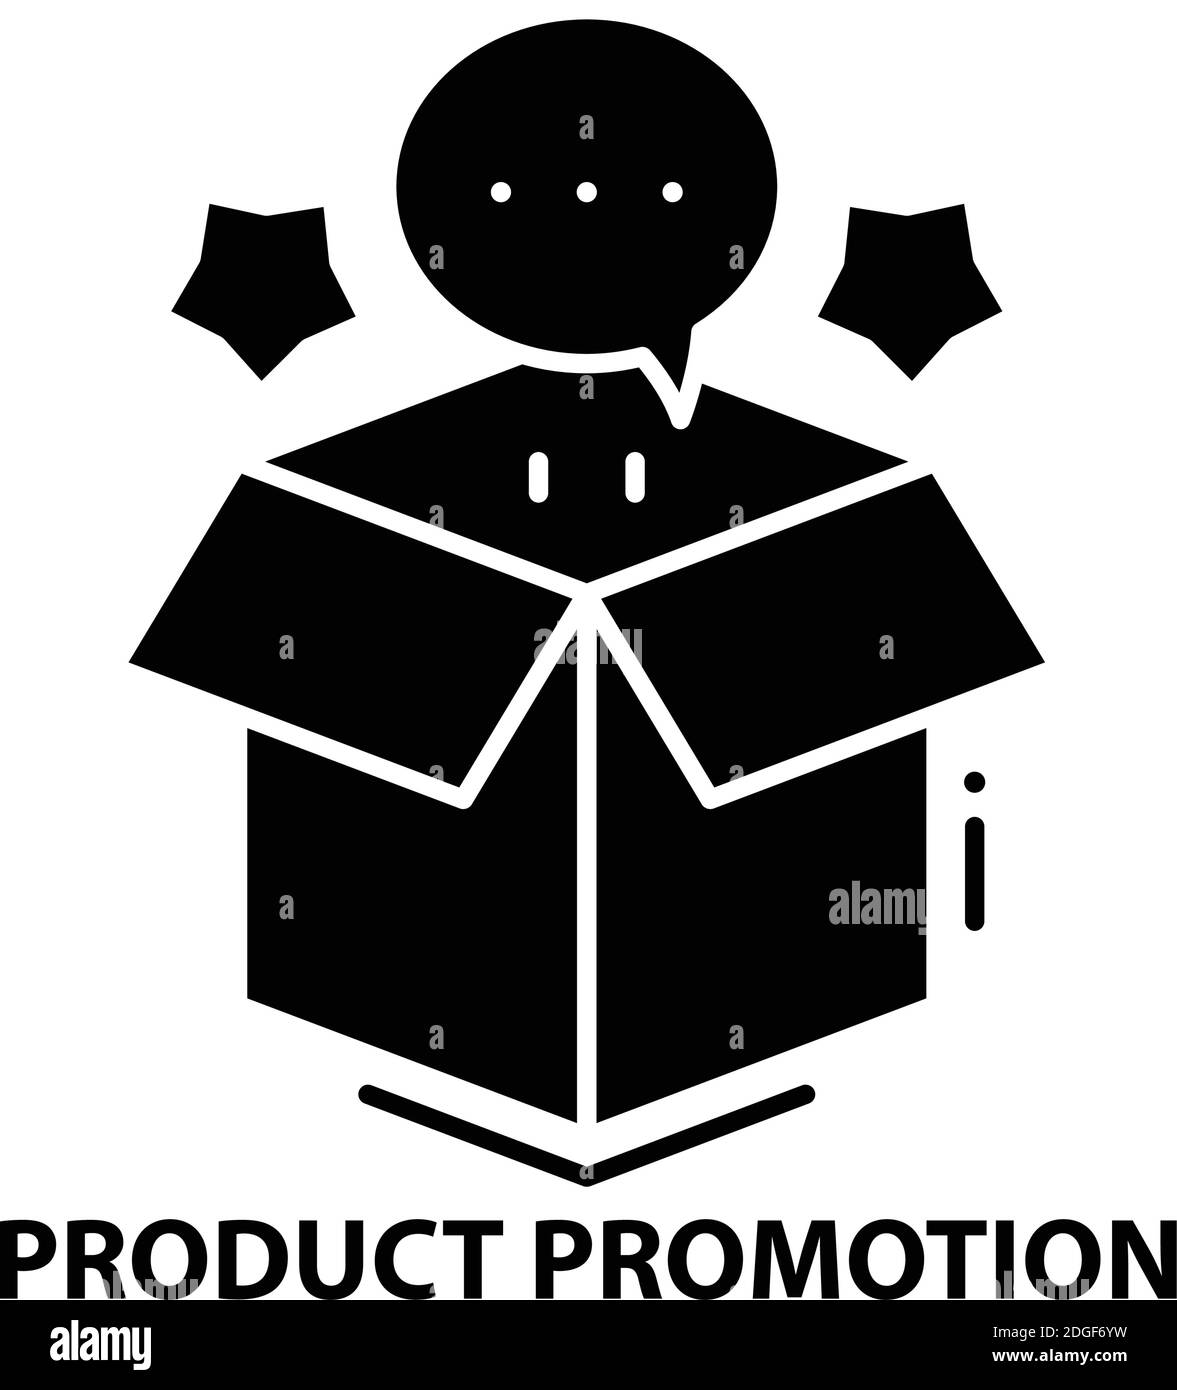 Produktpromotionssymbol, schwarzes Vektorzeichen mit editierbaren Striche, Konzeptdarstellung Stock Vektor